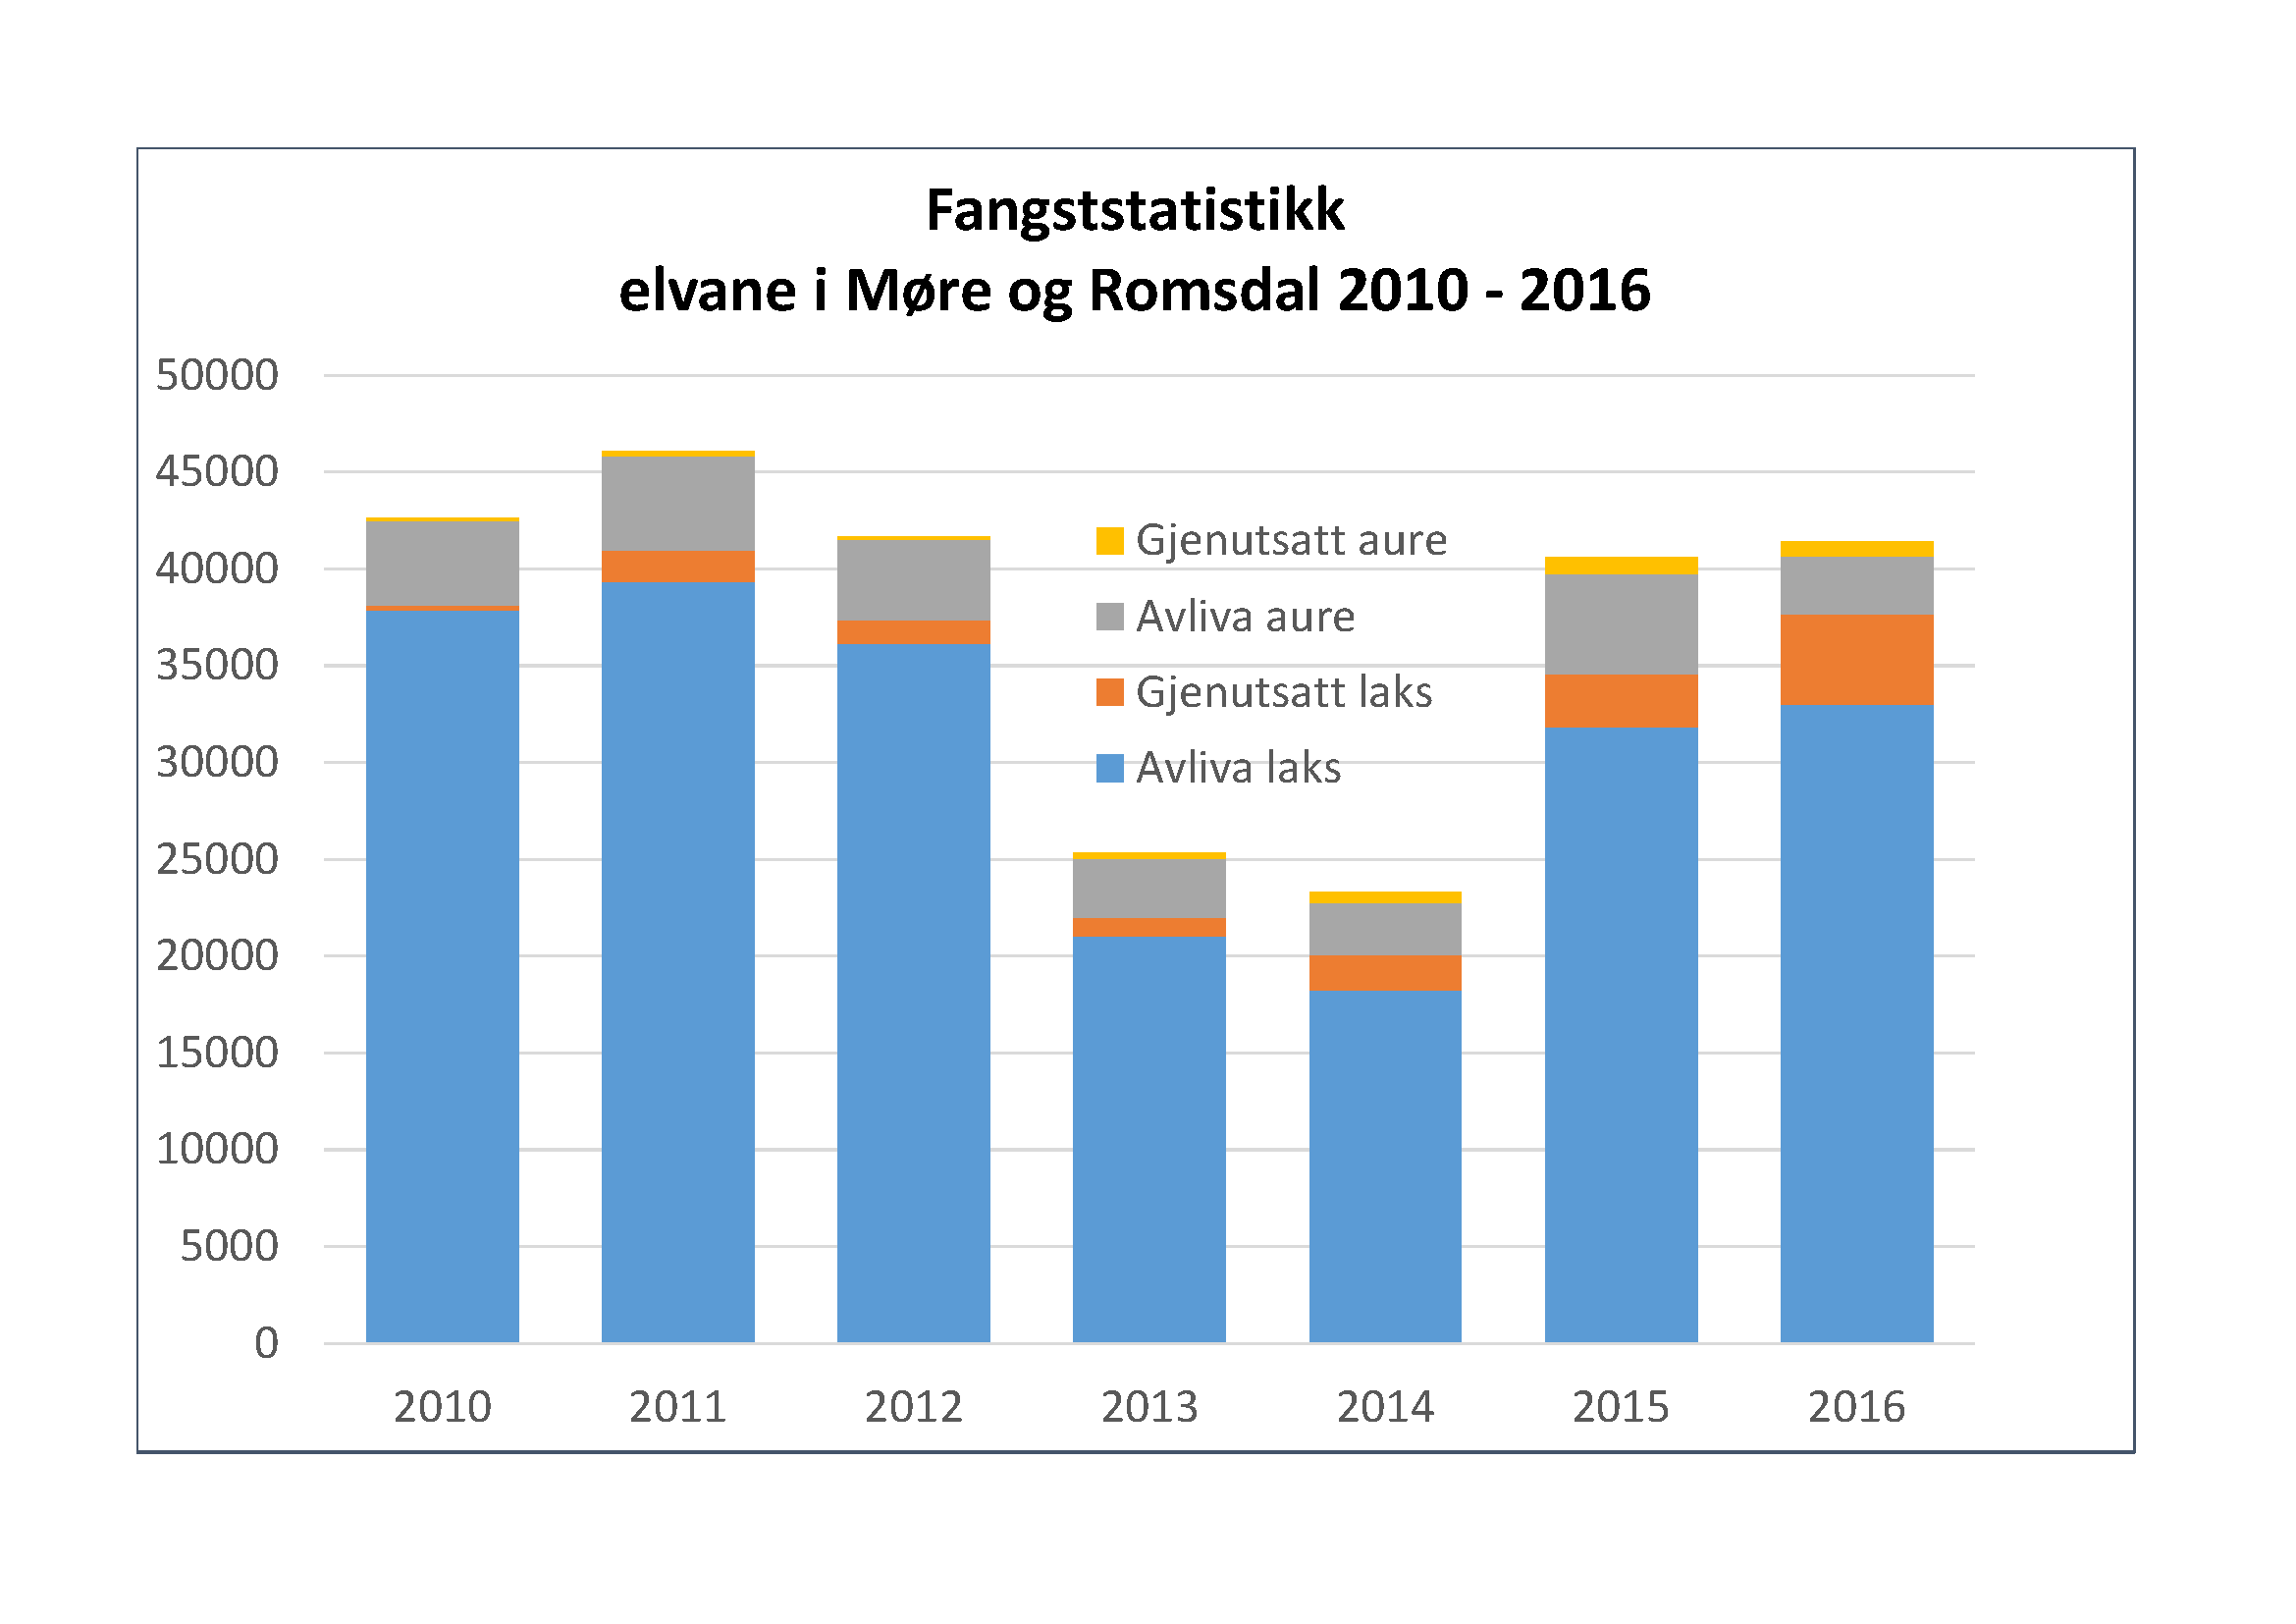 Fangsstatistikk - elvane i Møre og Romsdal 2010 - 2016